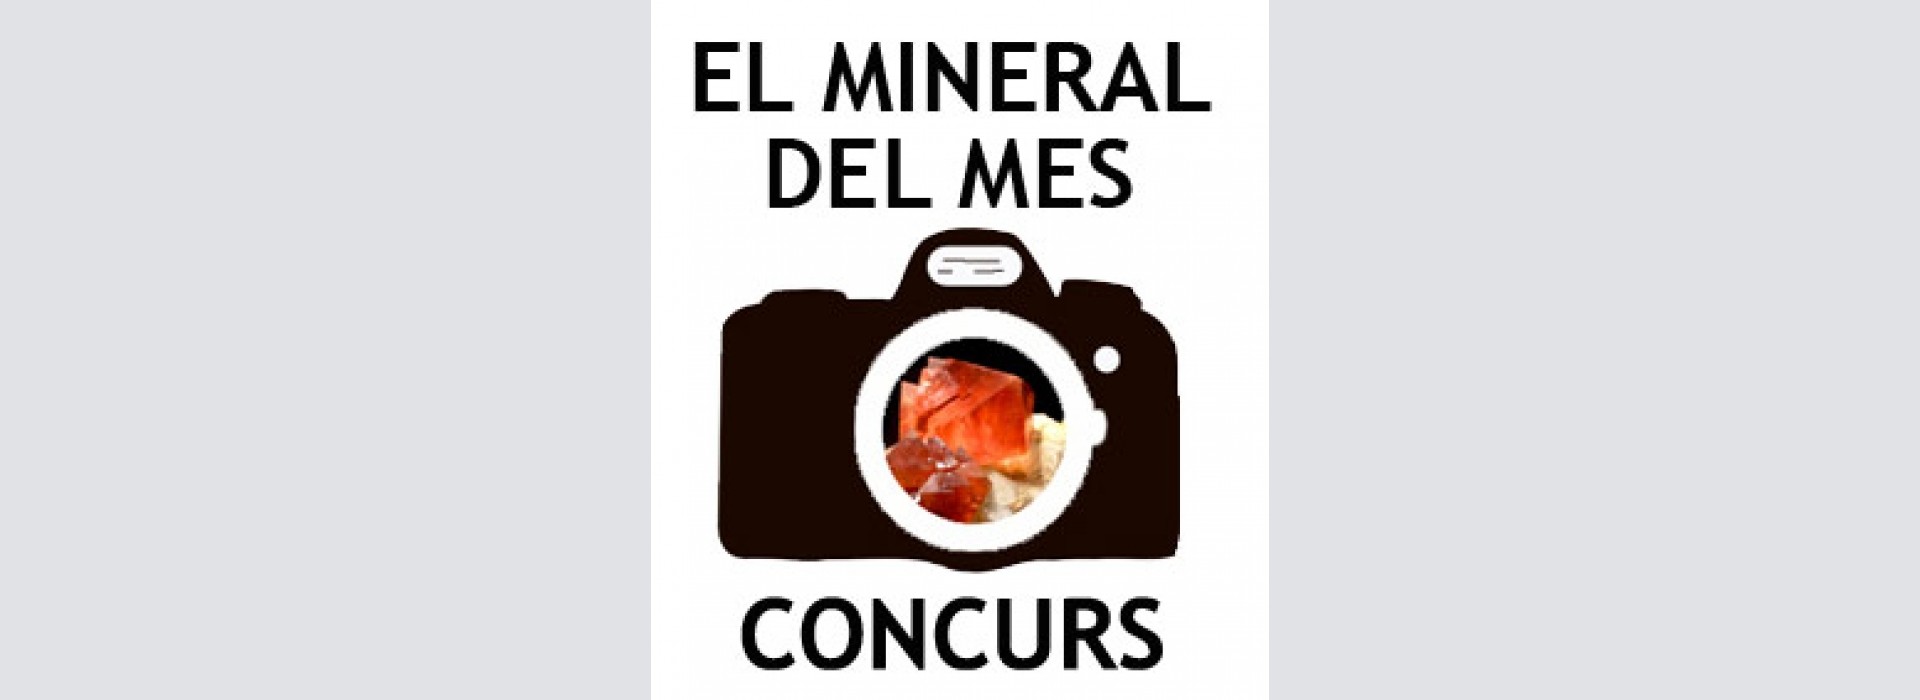 Concurs “El mineral del mes” - Març 2019.